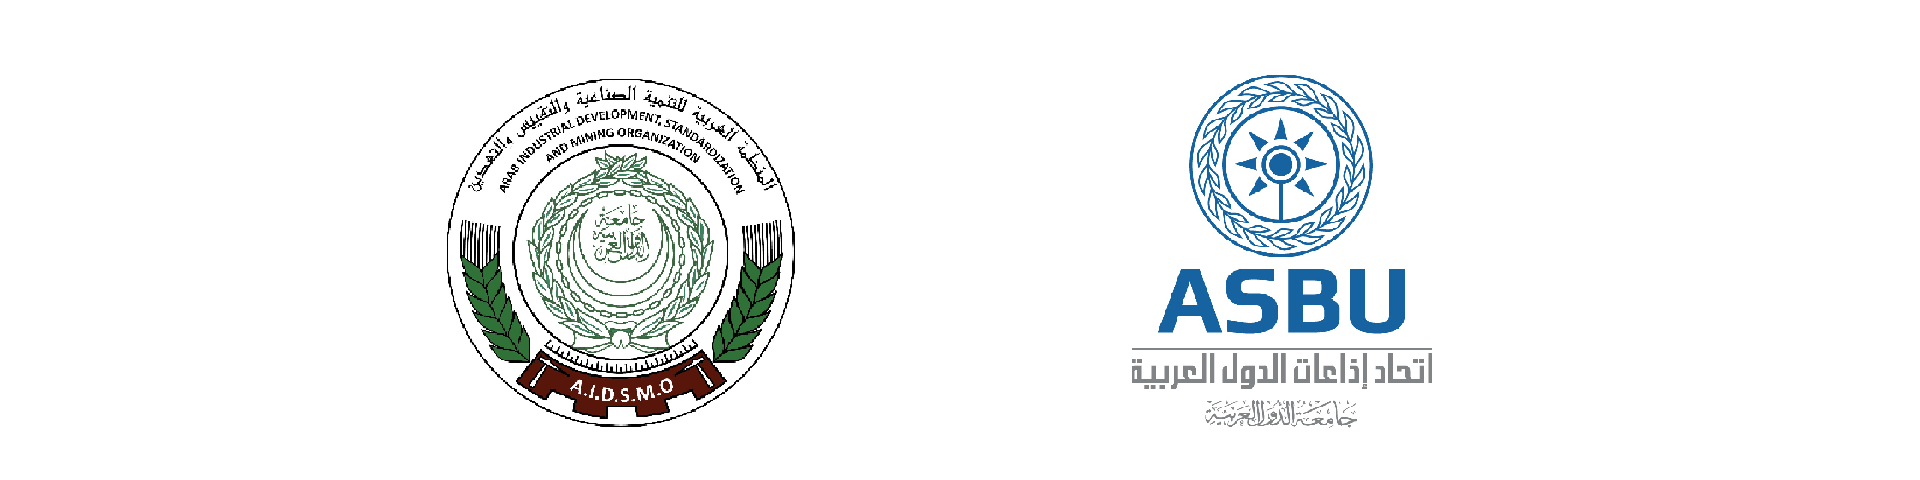   خطة تعاون بين اتحاد إذاعات الدول العربية  والمنظمة العربية للتنمية الصناعية والتقييس والتعدين دعمًا للعمل العربي المشترك